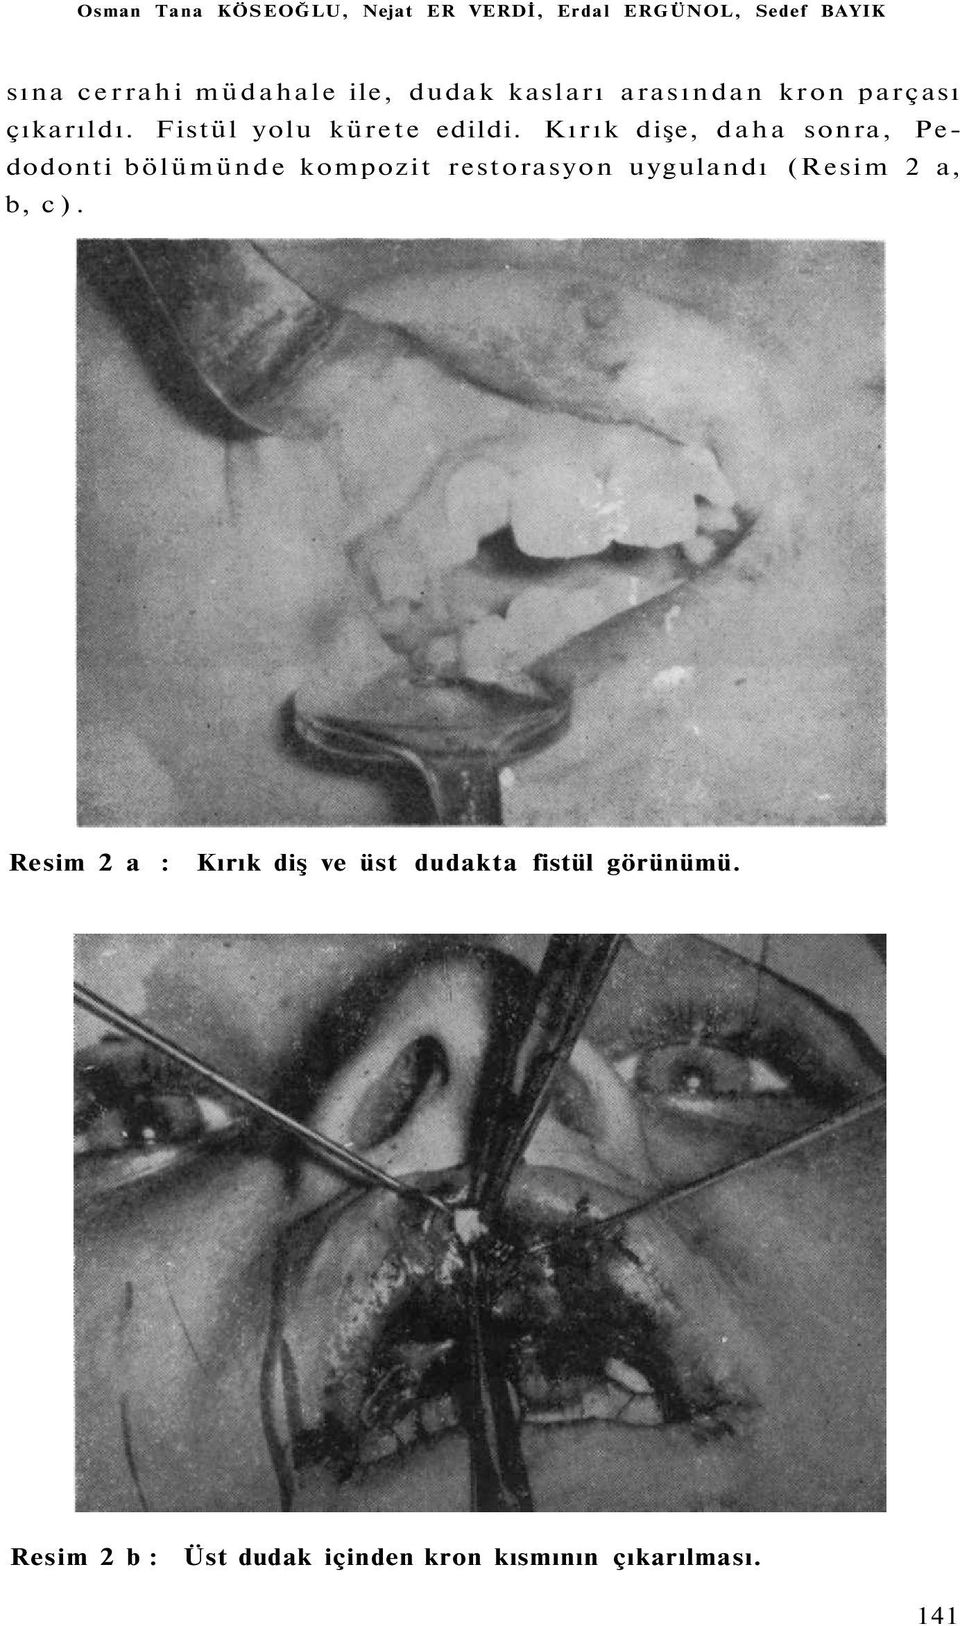 Kırık dişe, daha sonra, Pedodonti bölümünde kompozit restorasyon uygulandı (Resim 2 a, b, c).